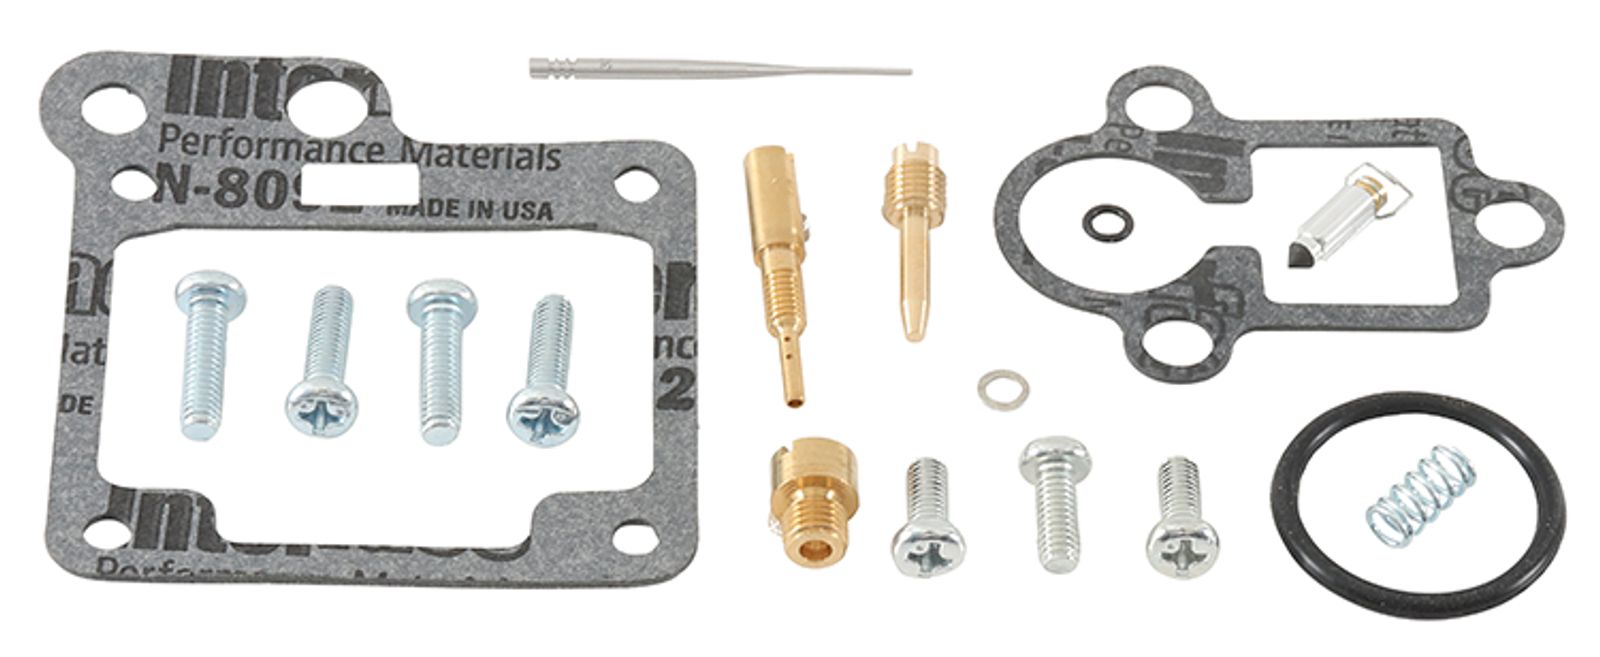 Wrp Carb Repair Kits - WRP261317 image